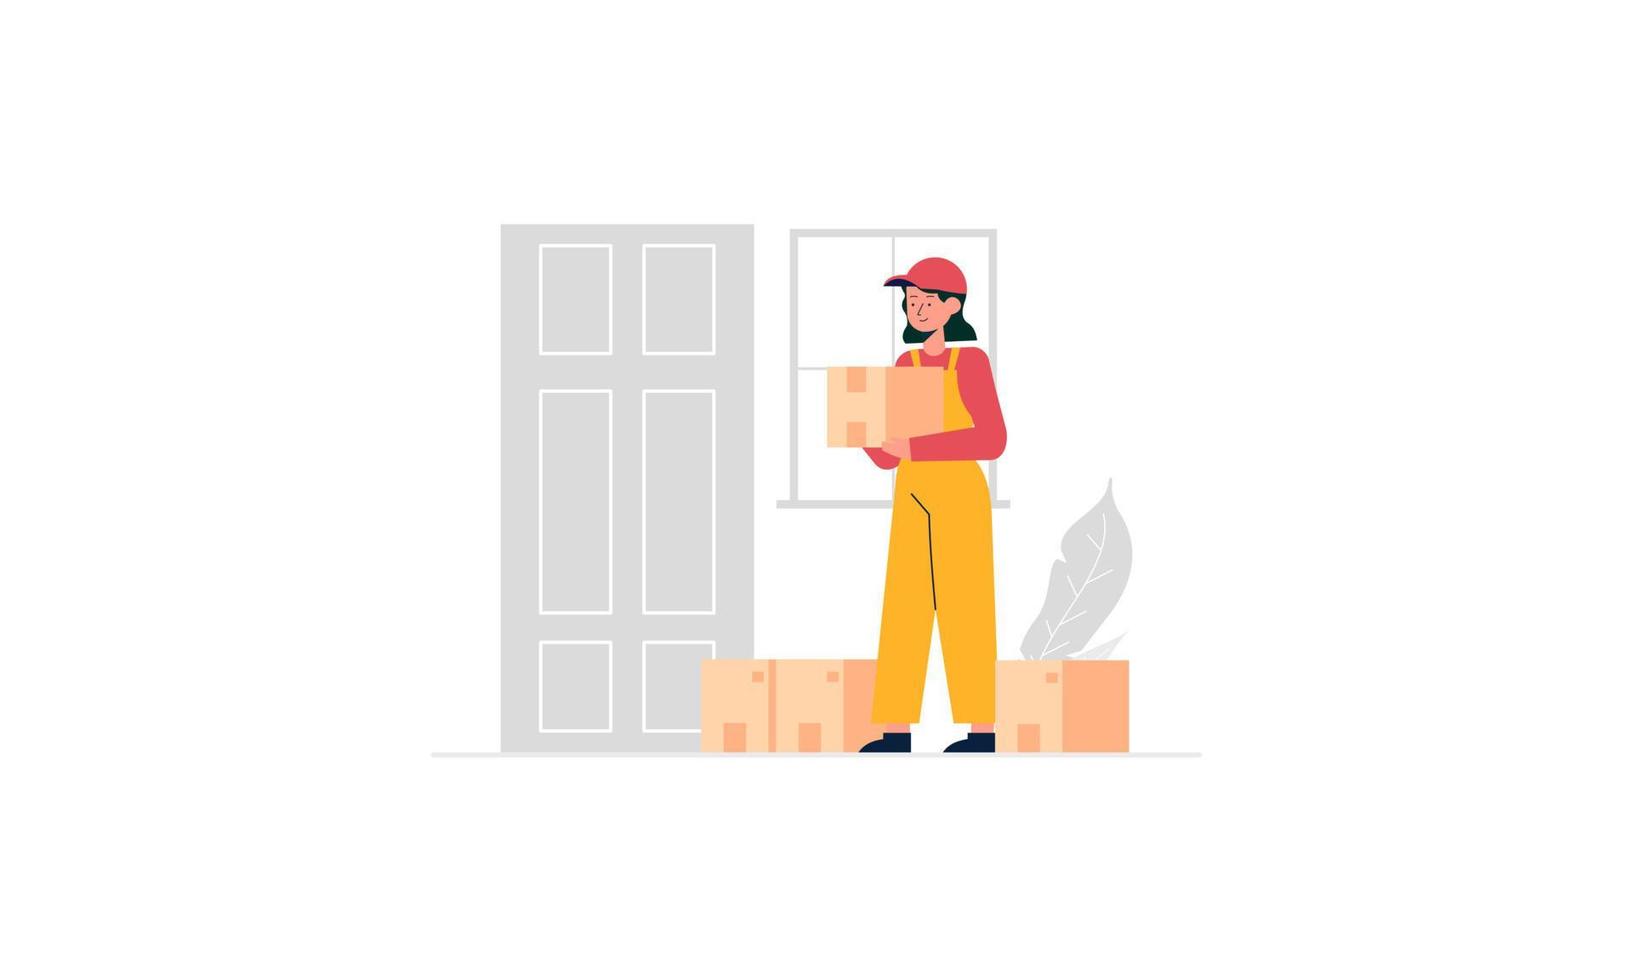 servicio de entrega, ilustración de concepto de envío rápido de entrega vector